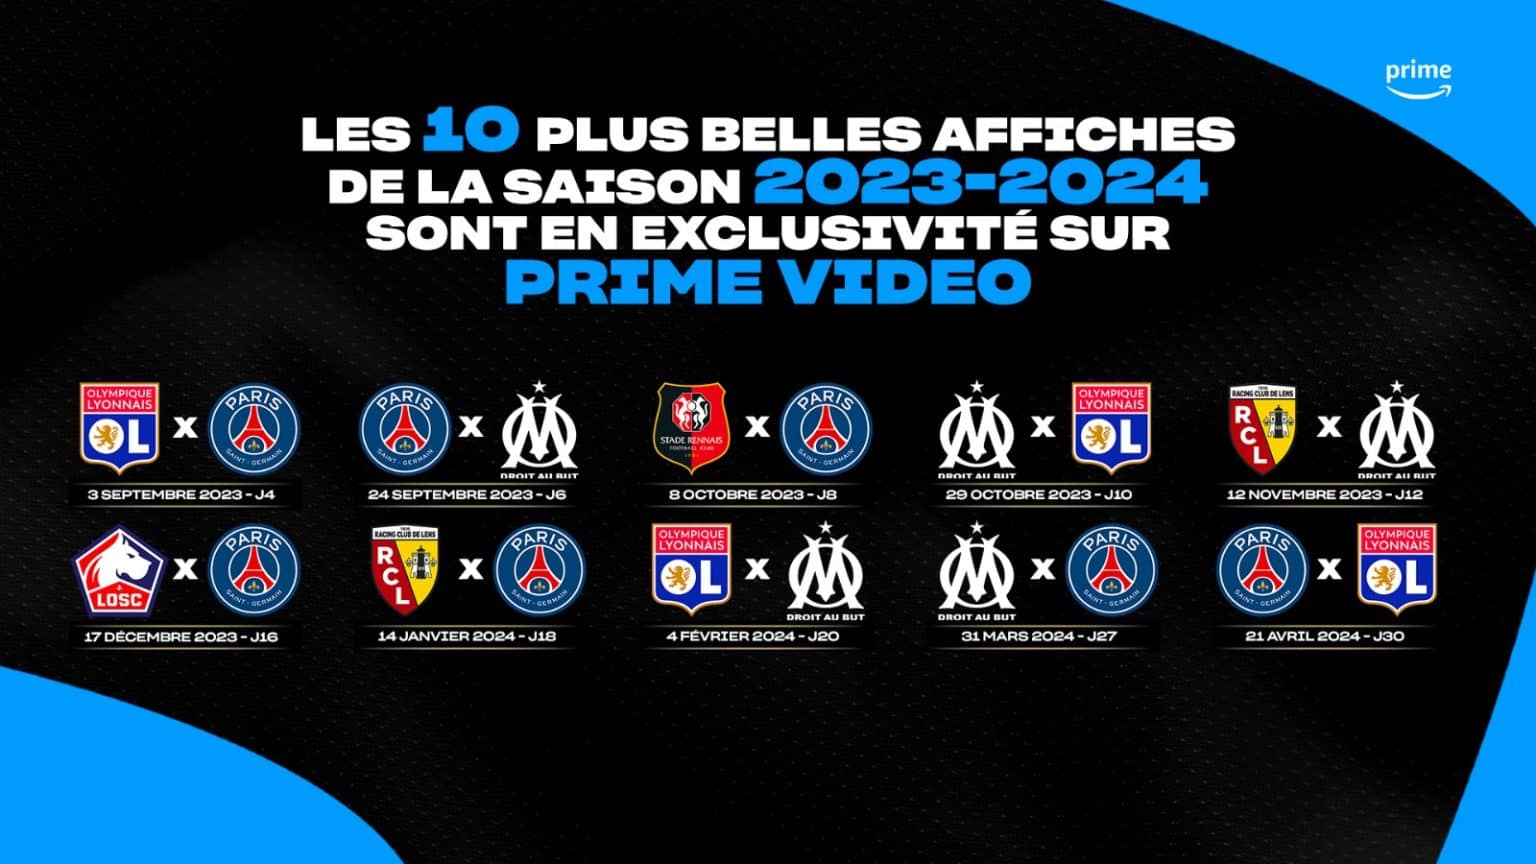 Les 10 plus belles affiches de la saison 20232024 de Ligue 1 seront en